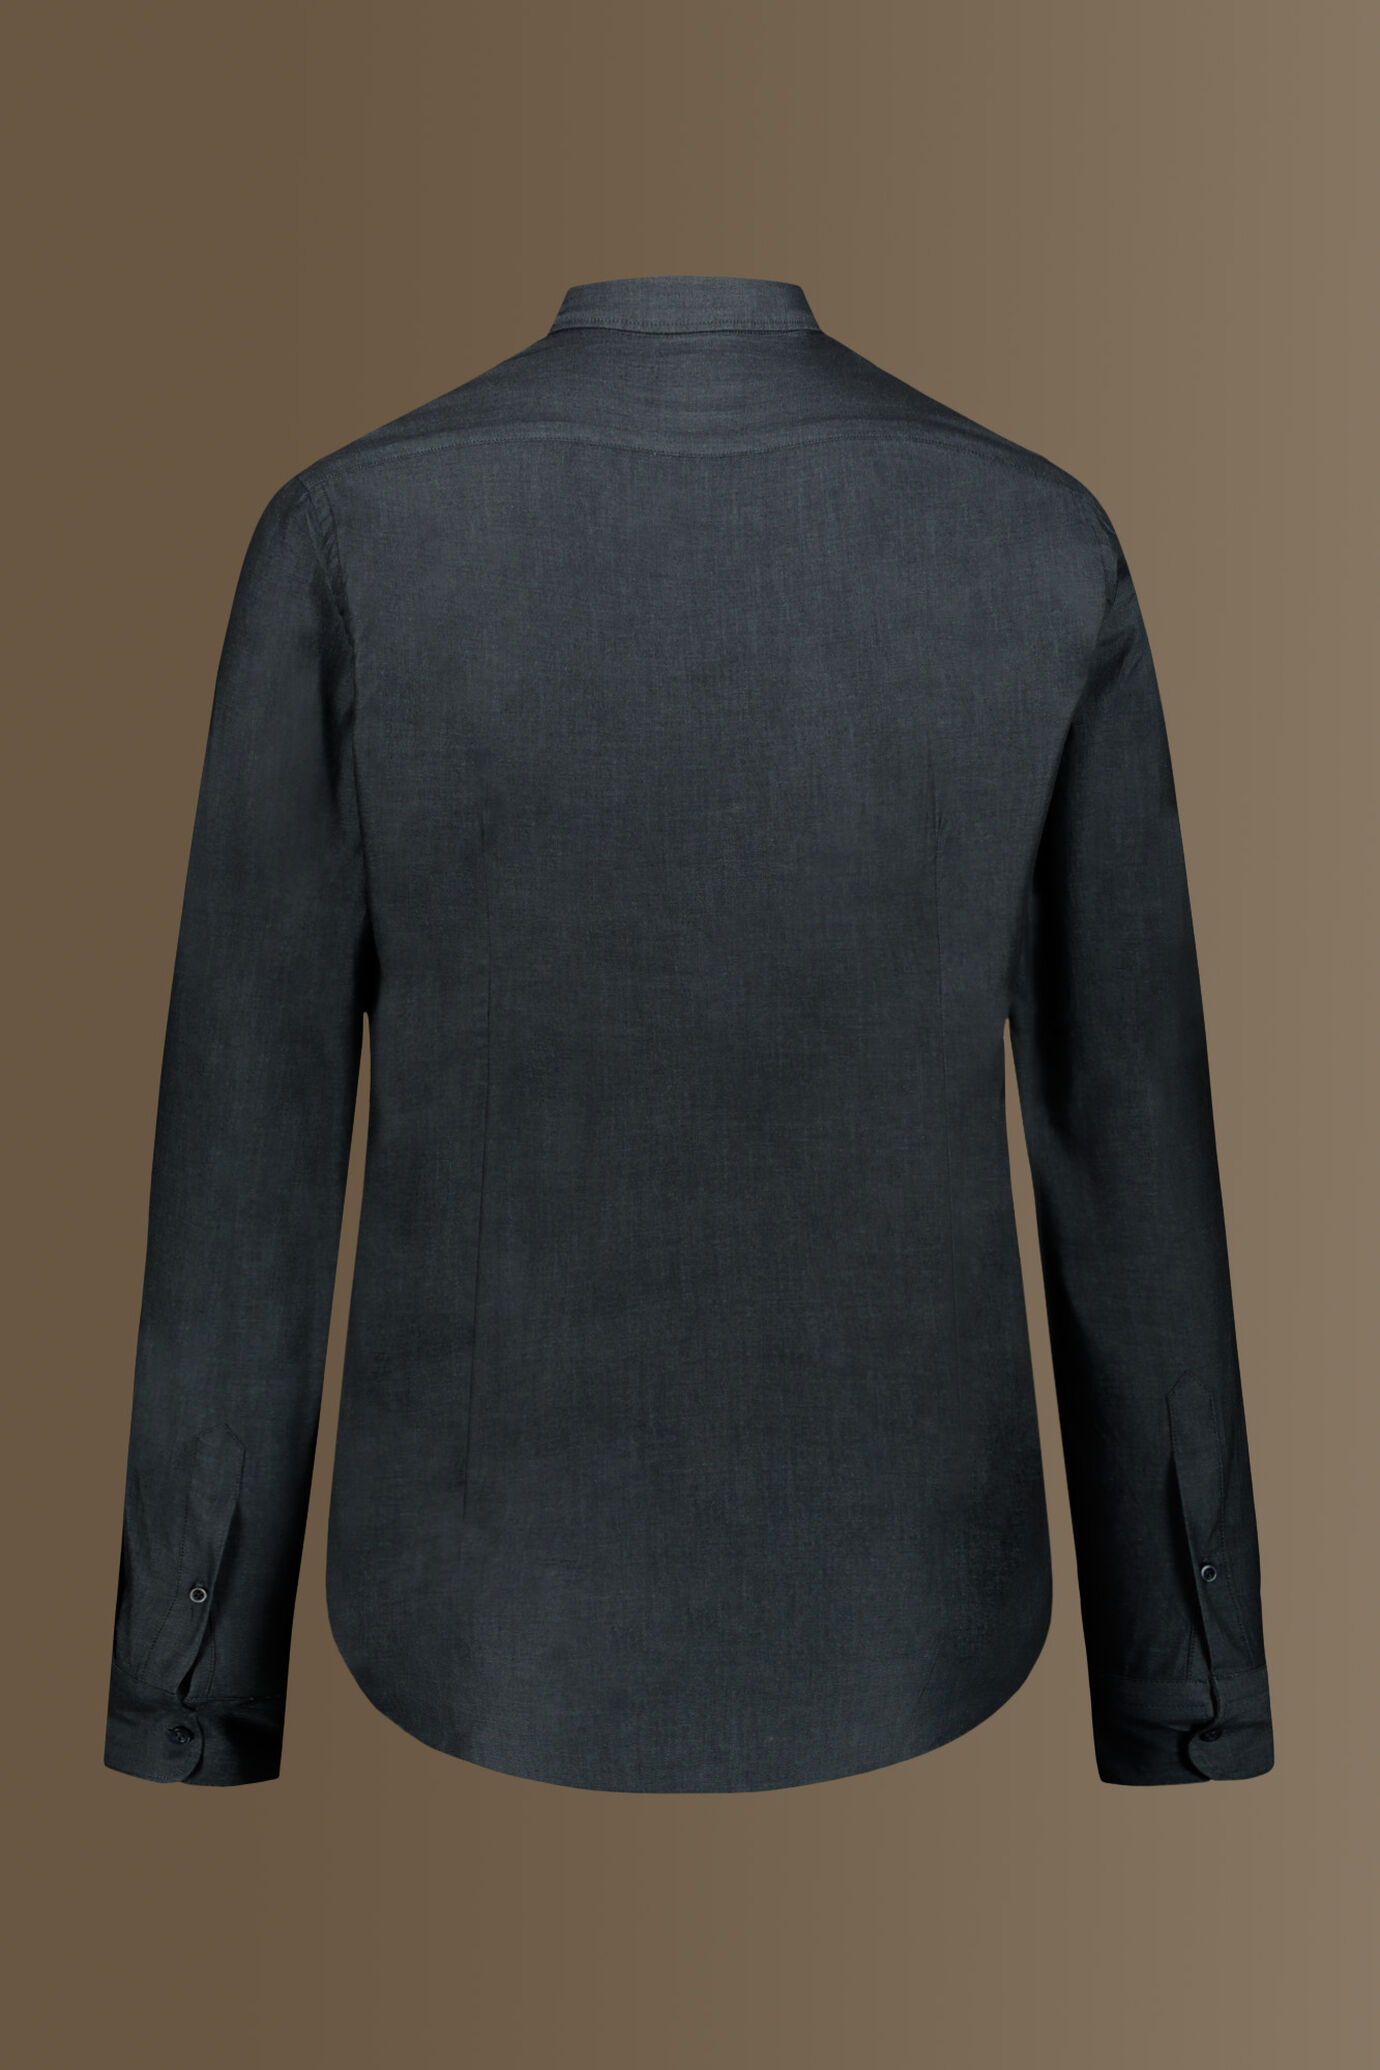 Camicia casual collo francese tinto filo 100% cotone tessuto twill chambray image number 4